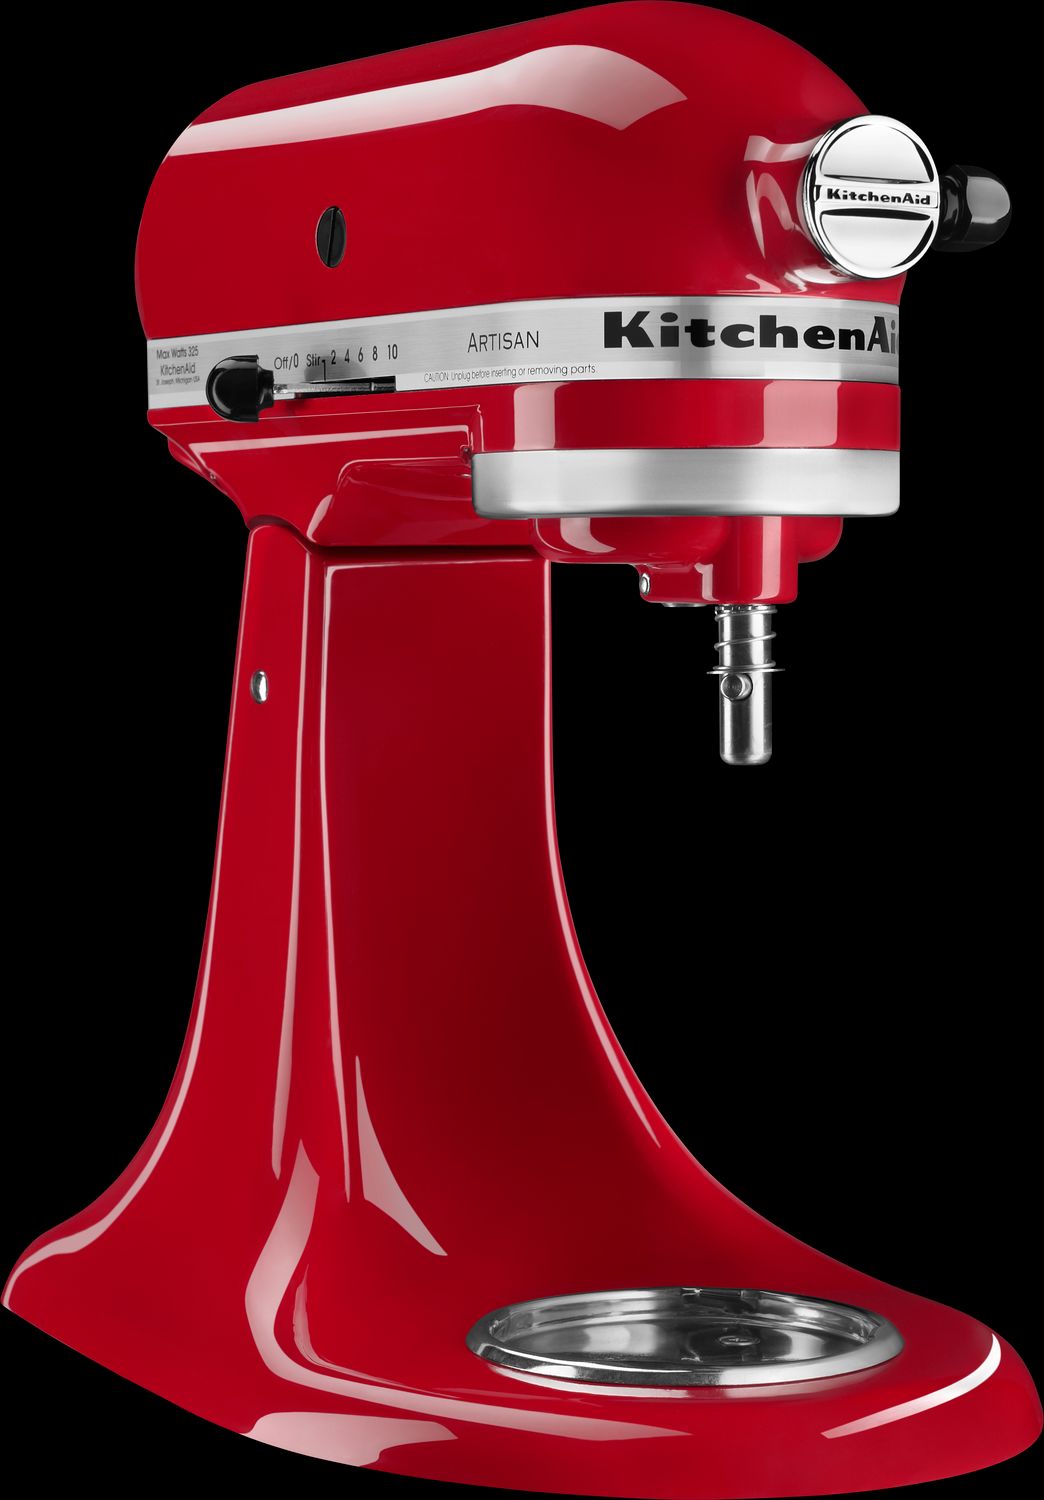 KitchenAid KSM150PSER Artisan Empire Red 5-Quart Tilt-Head Stand Mixer +  Reviews, Crate & Barrel Canada